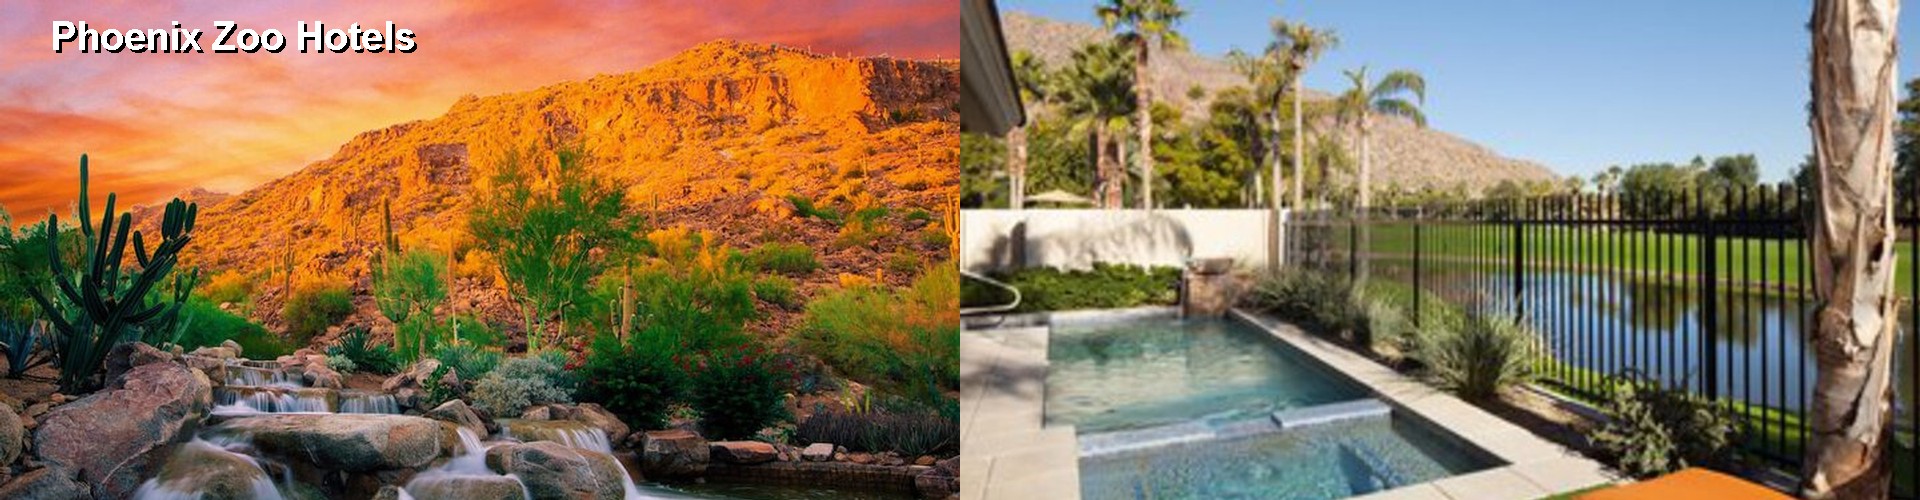 2 Best Hotels near Phoenix Zoo